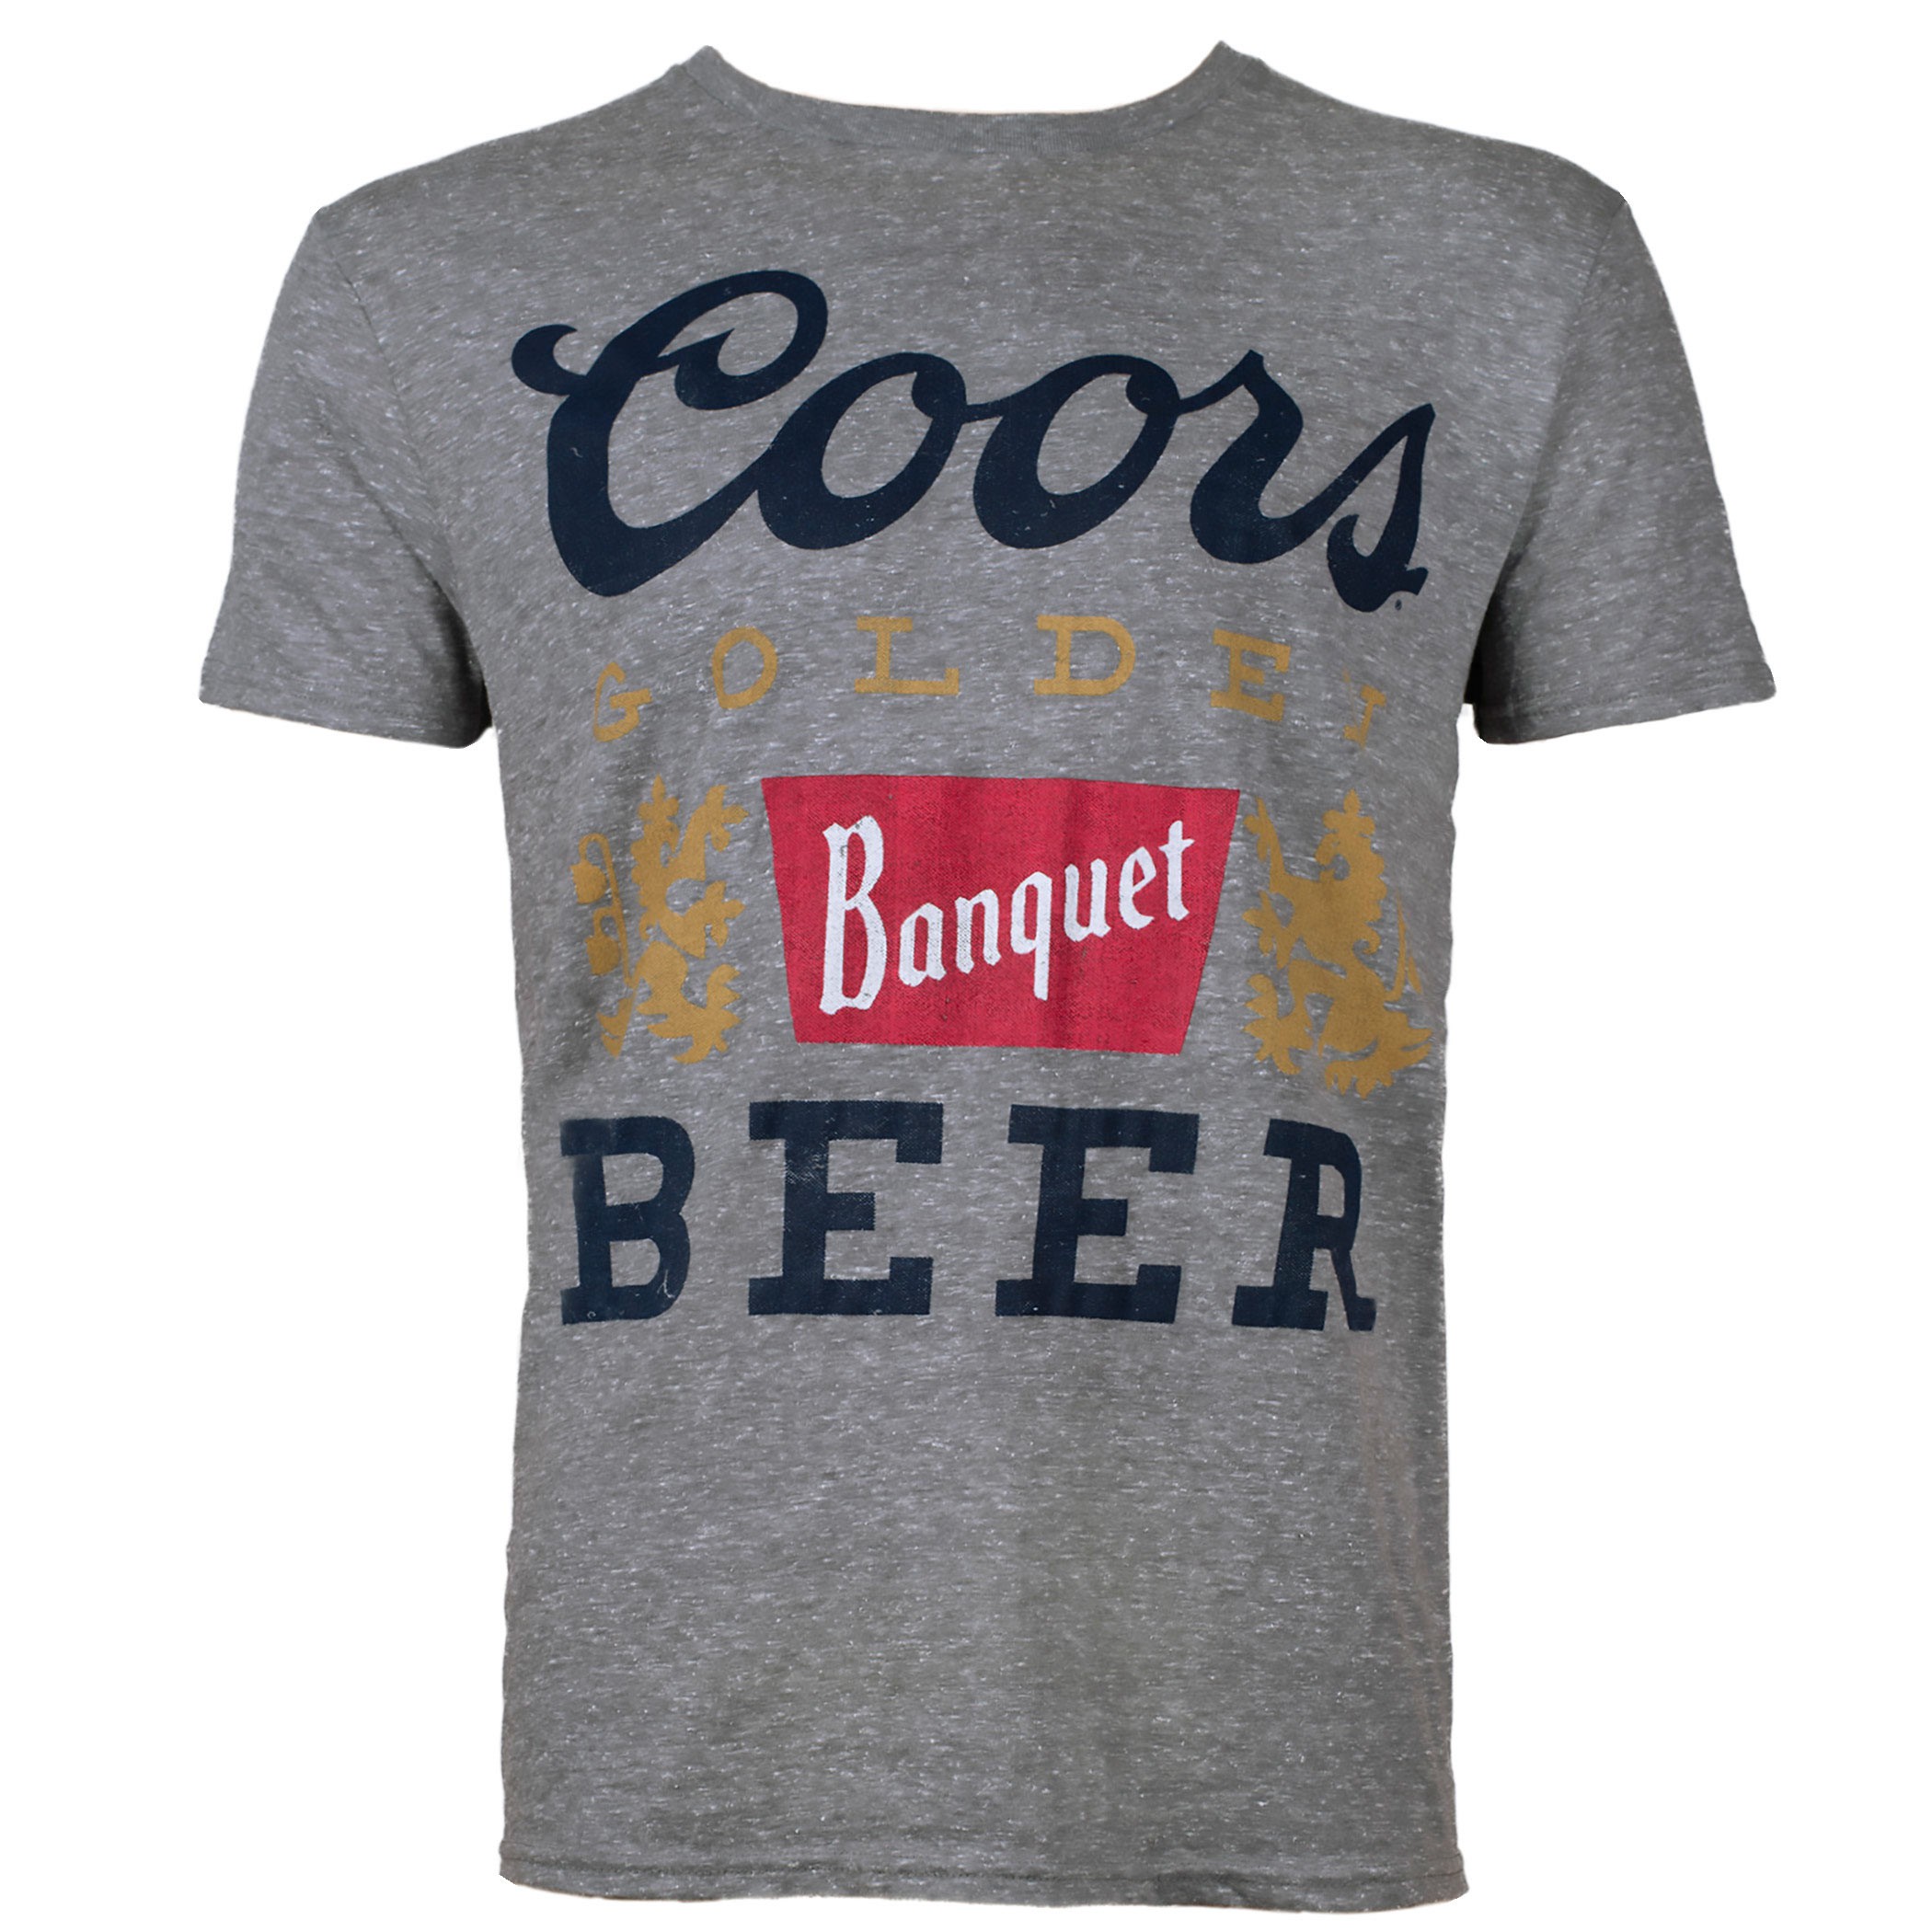 Coors Banquet Beer Gray Men's Tee Shirt